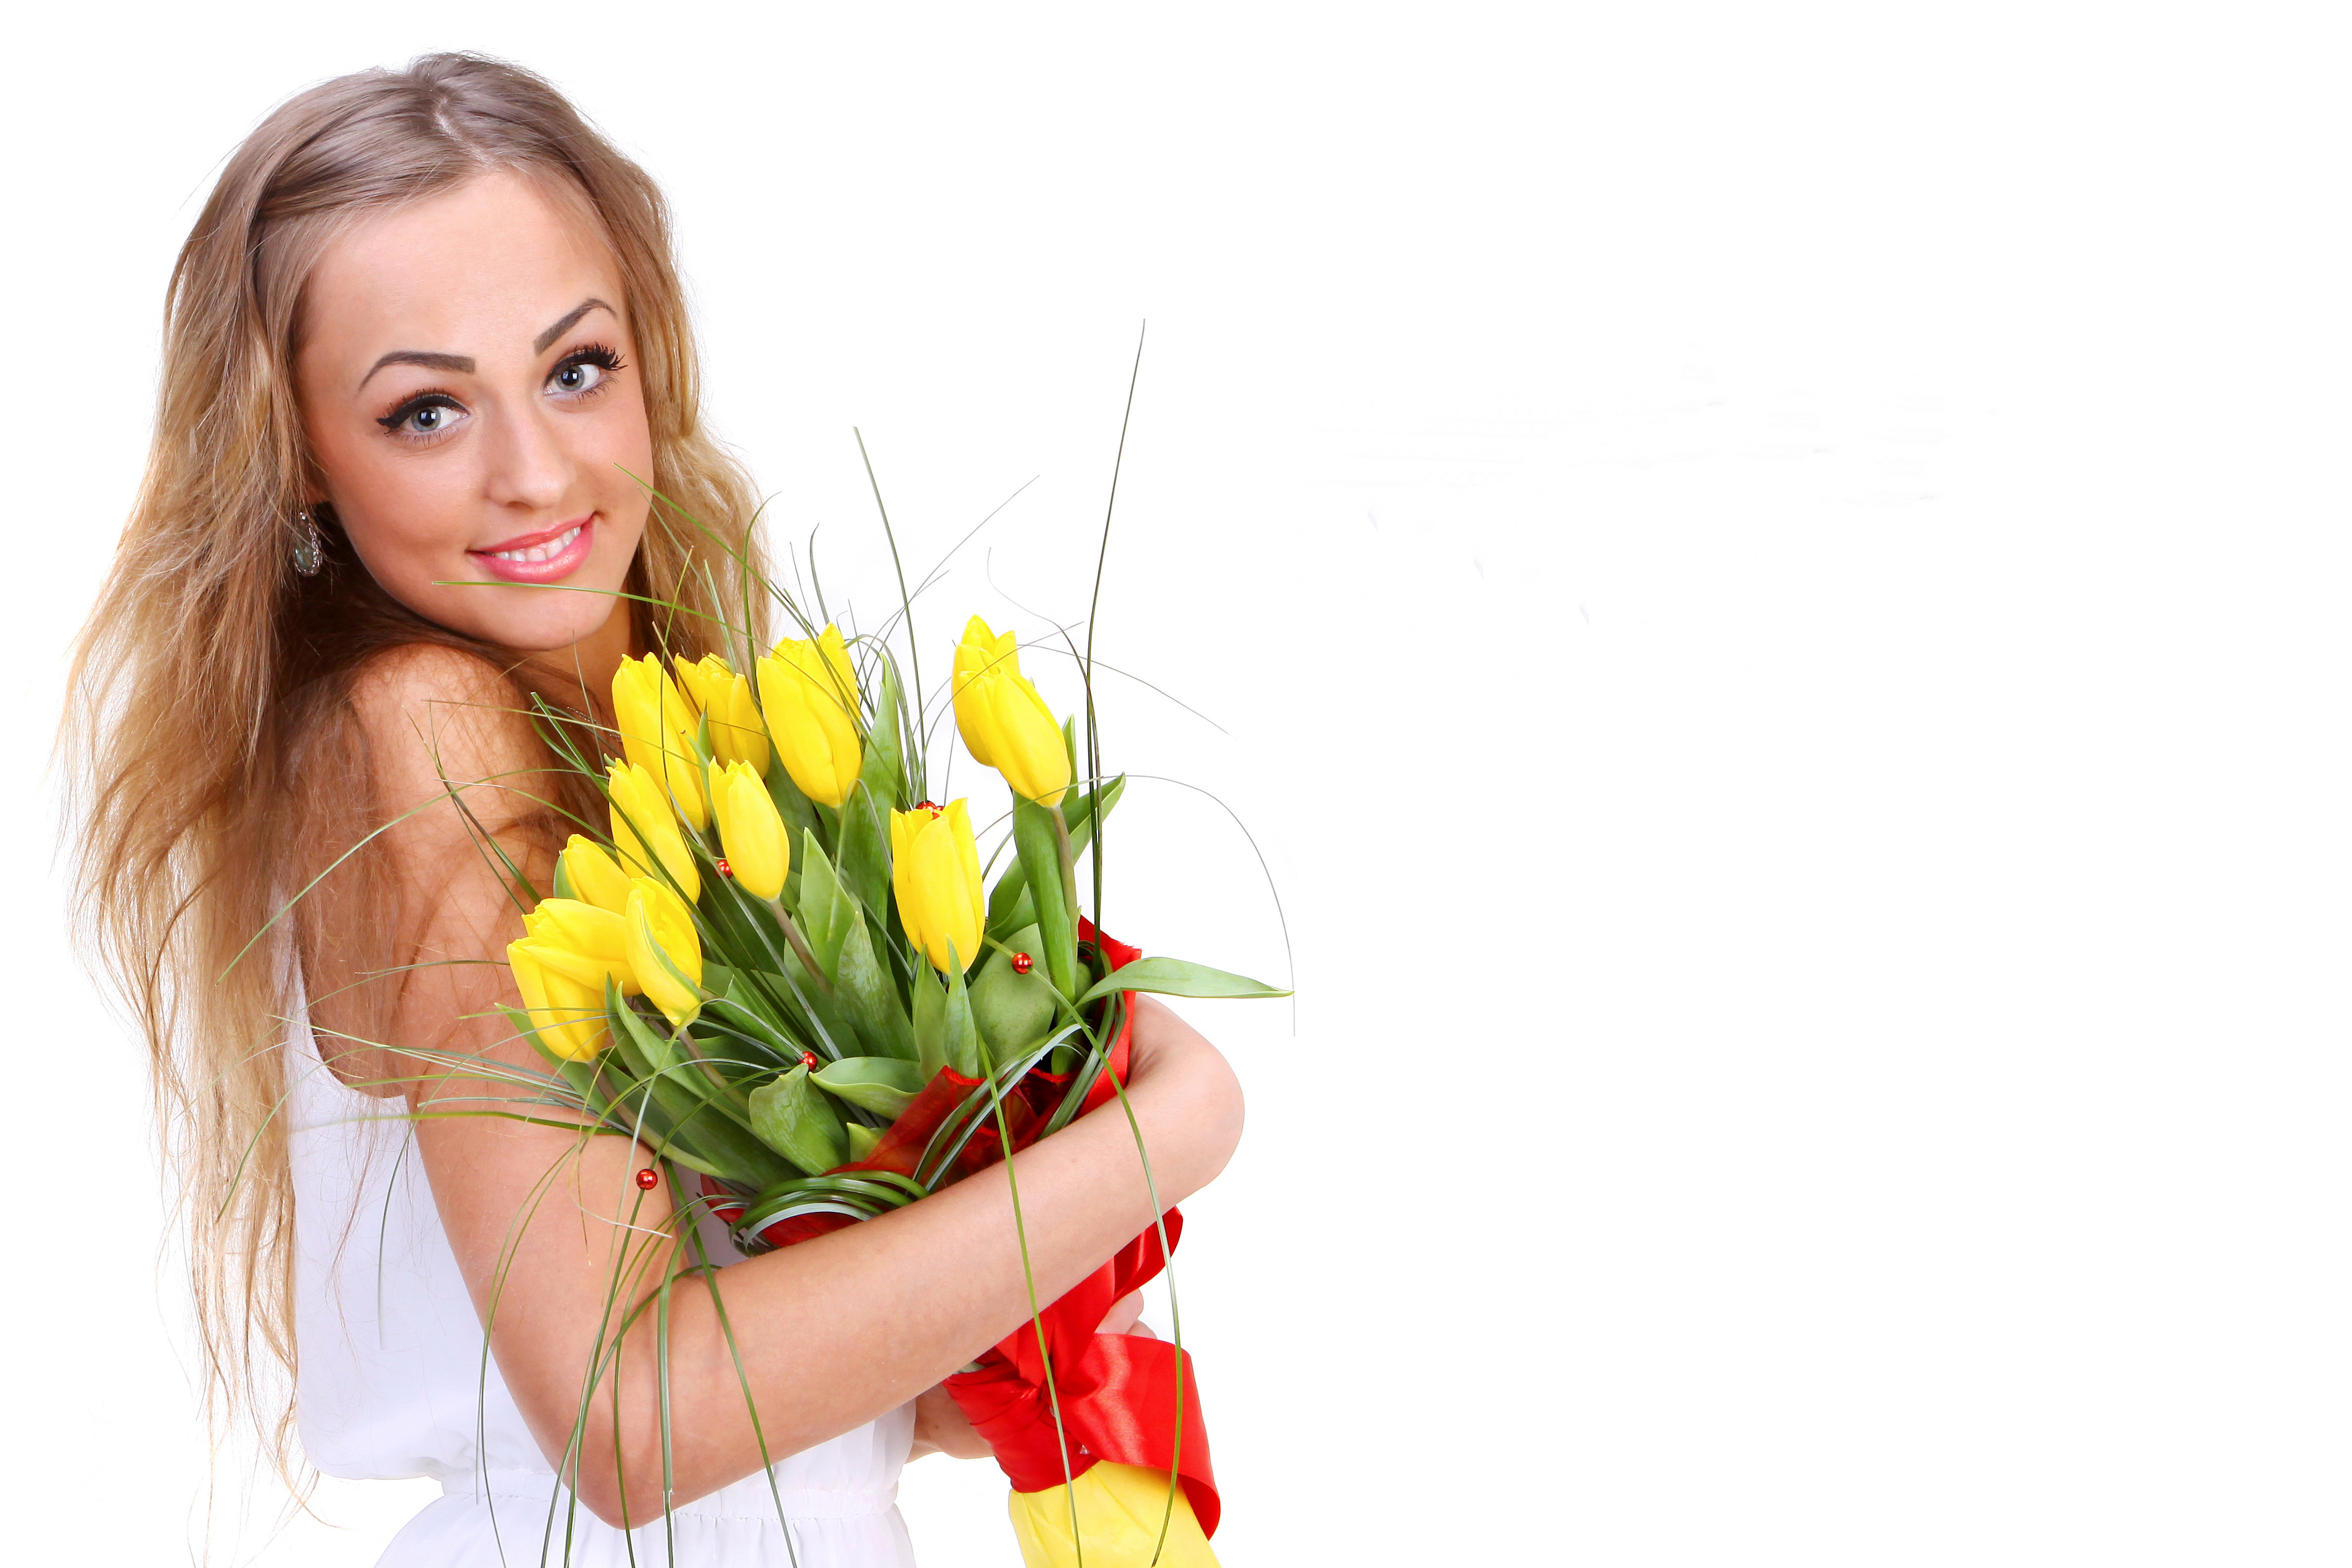 Красивое фото с тюльпанами девушки. Девушка с желтыми тюльпанами. Женщина с цветами. Букет "женщине". Счастливая девушка с цветами.